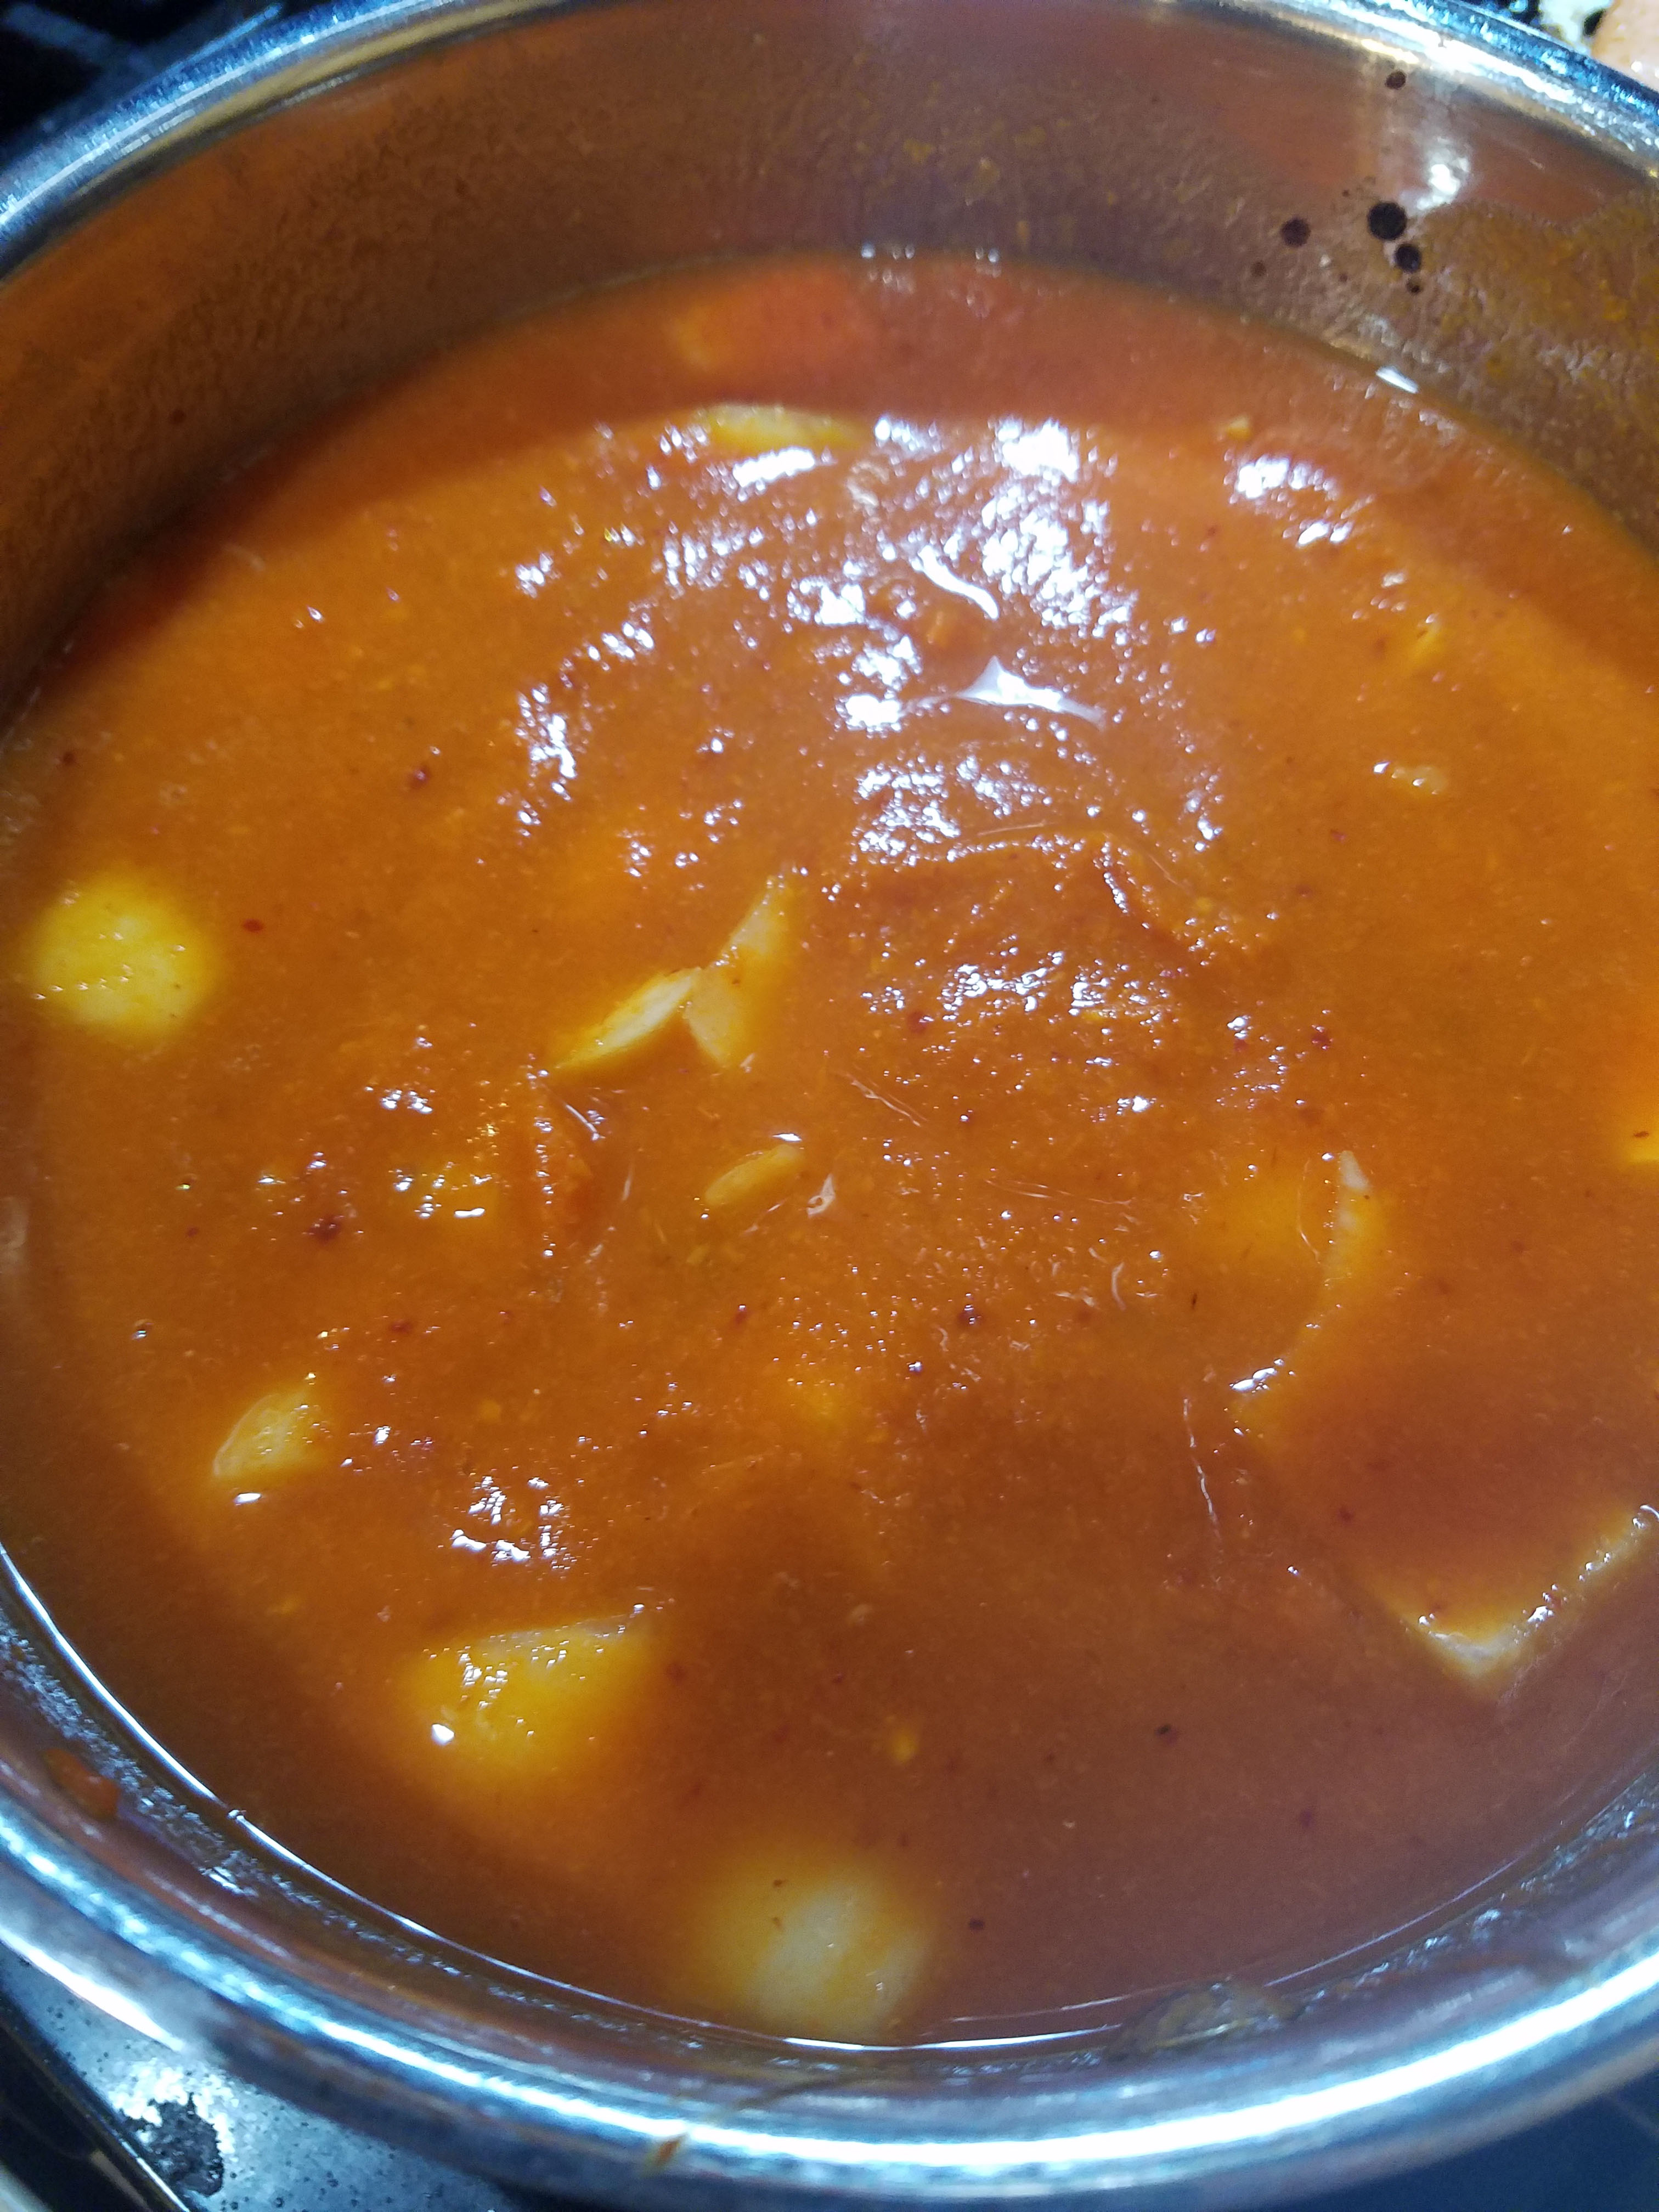 Habanero Hot Sauce recipe